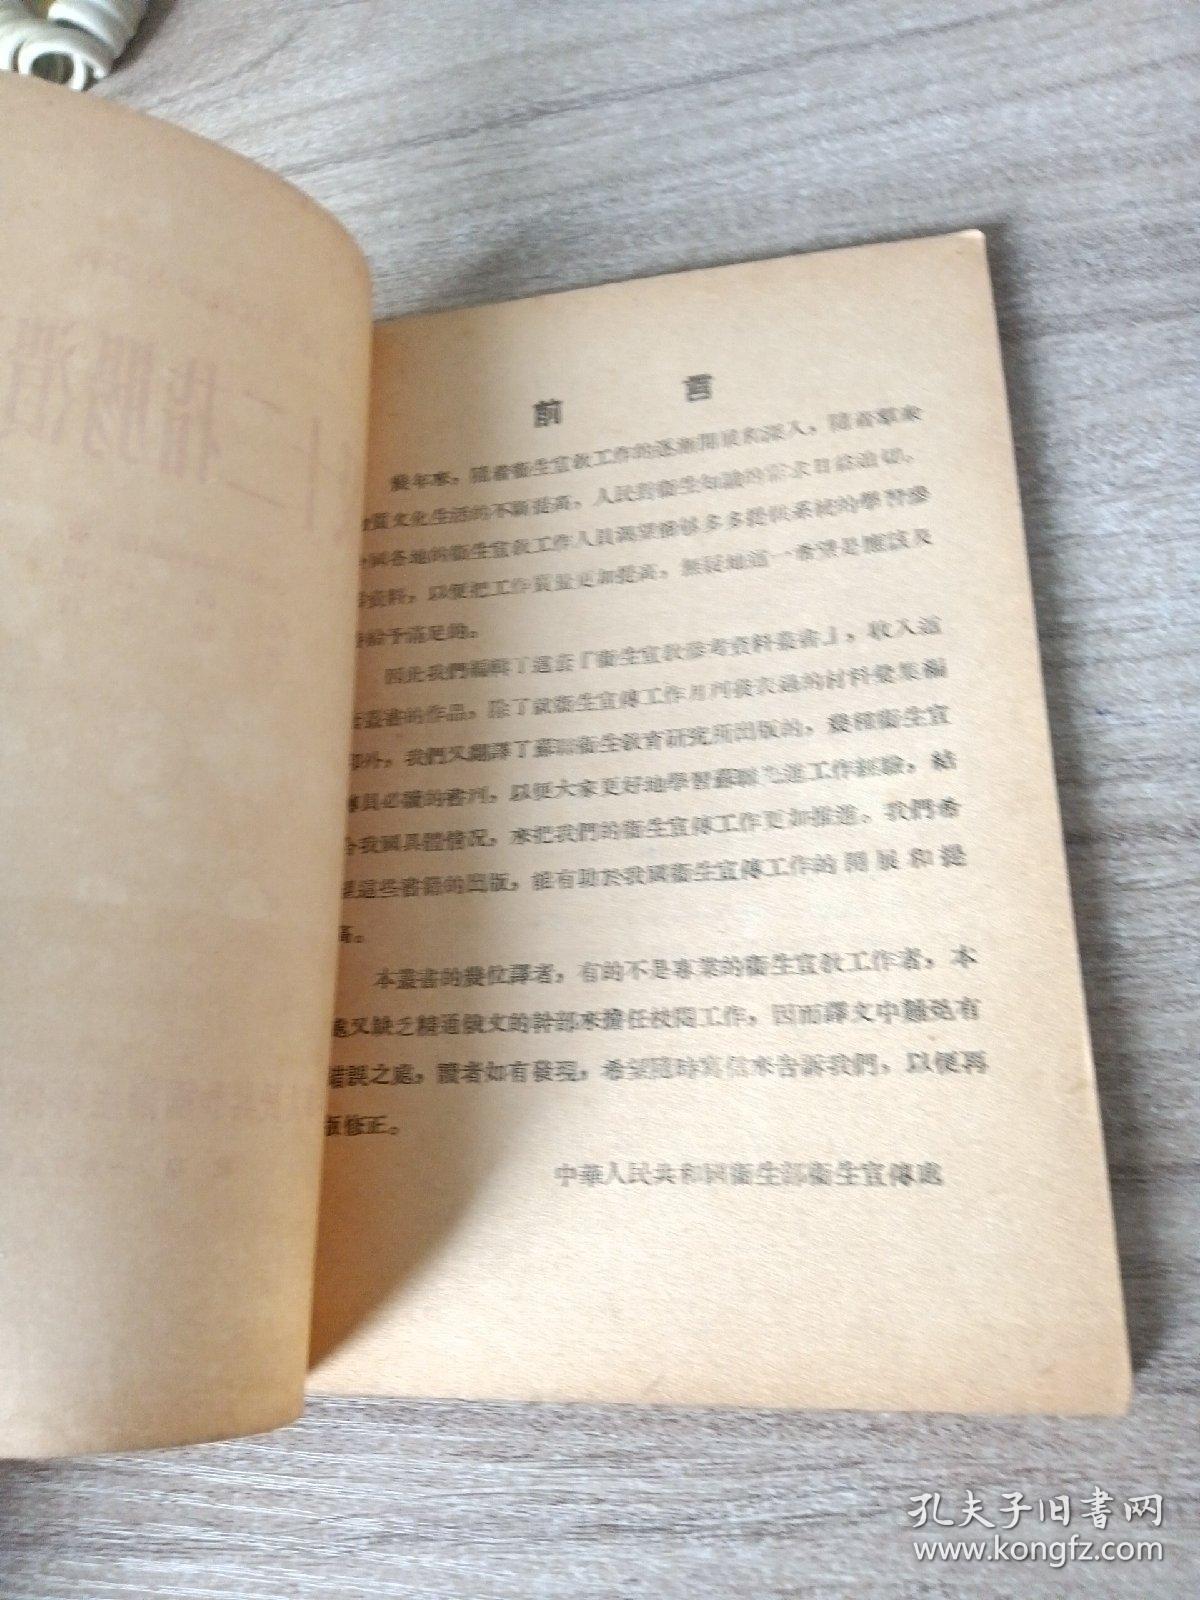 胃及十二指肠溃疡病～赵伯仁 译（品佳丶直板）1955年1版

老版原版